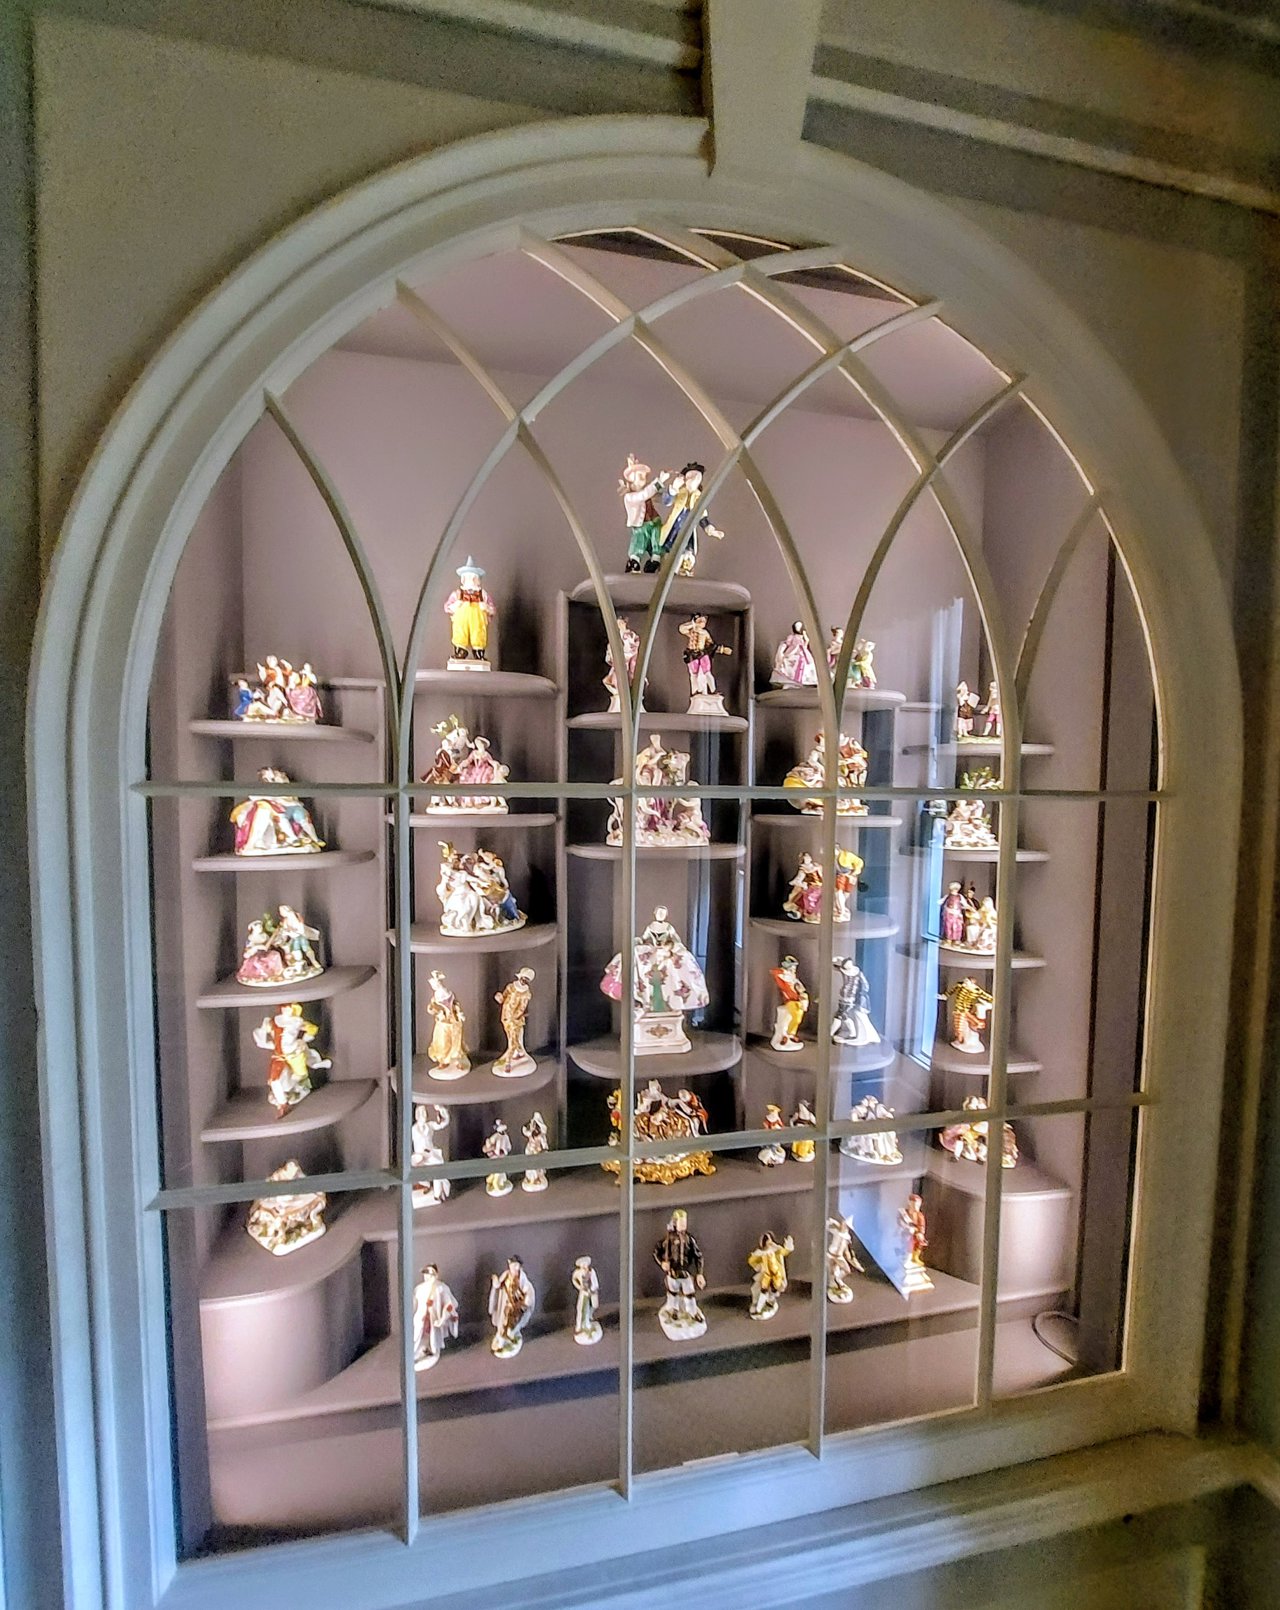 Una de las vitrinas en las que se expone la colección de porcelana perteneciente a Lady Binning, última propietaria de la casa.